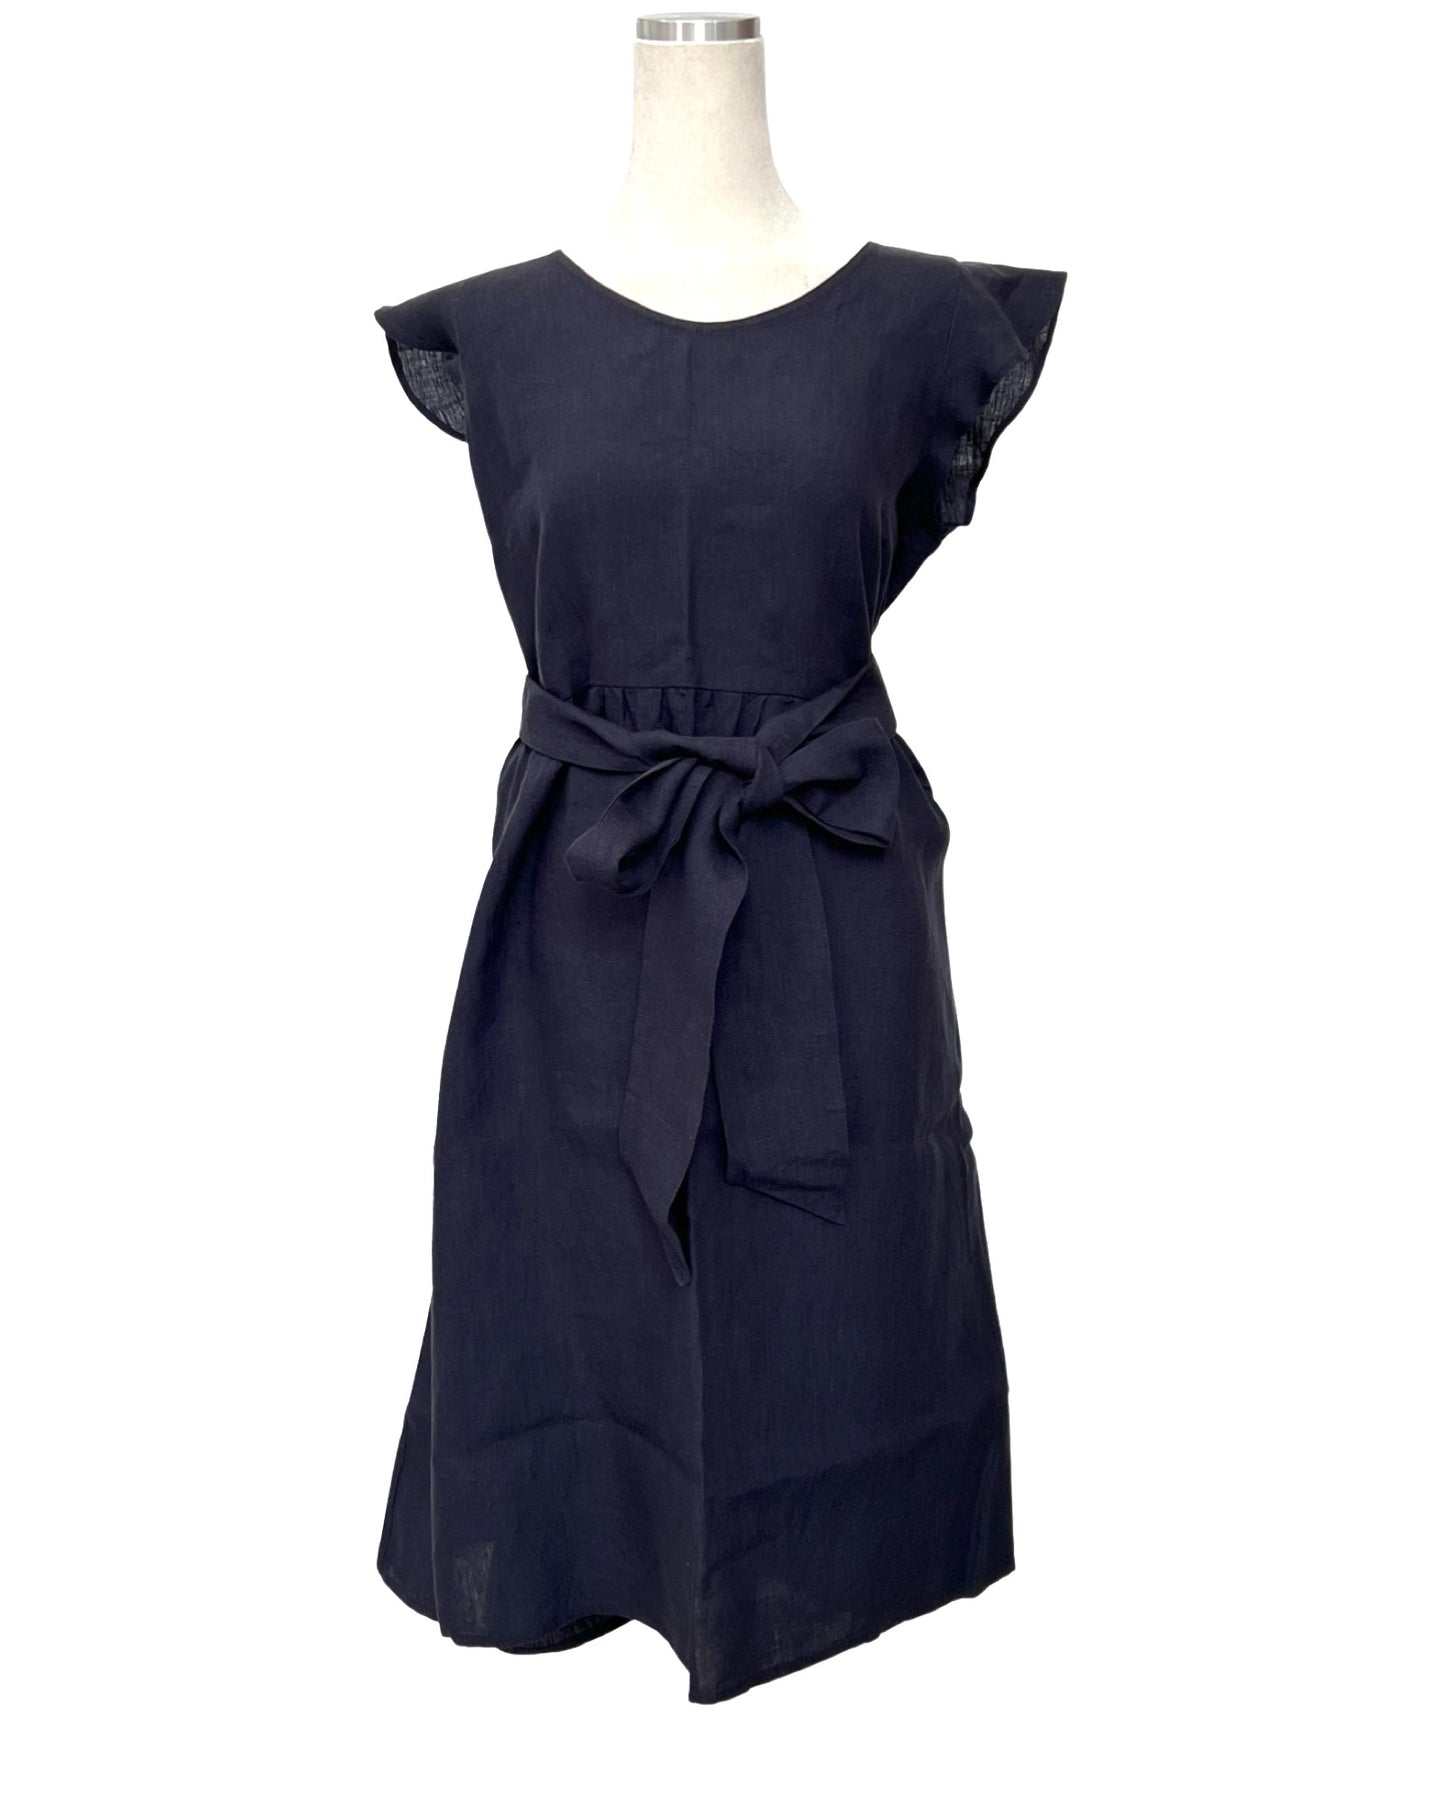 "Mollie" Dress - Navy Linen